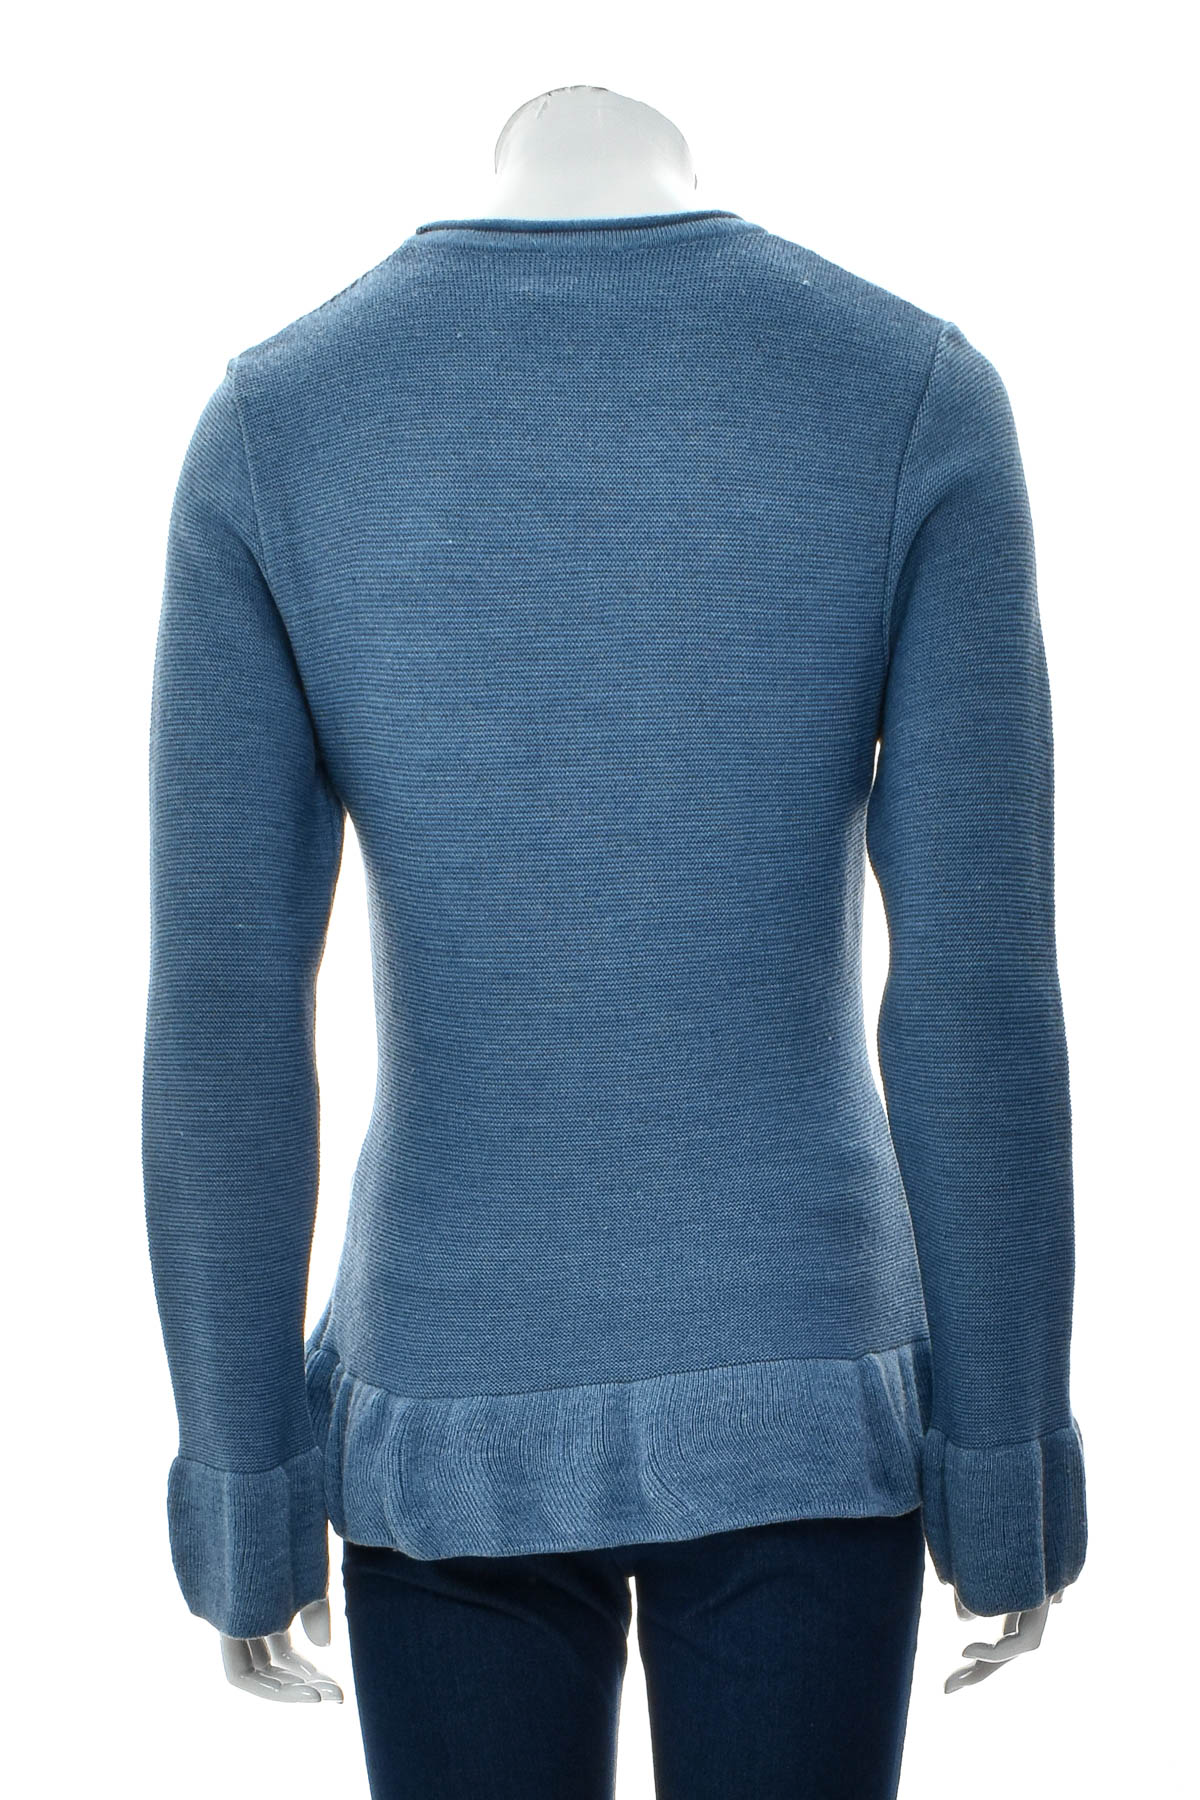 Women's sweater - Huber Mode & Tracht - 1